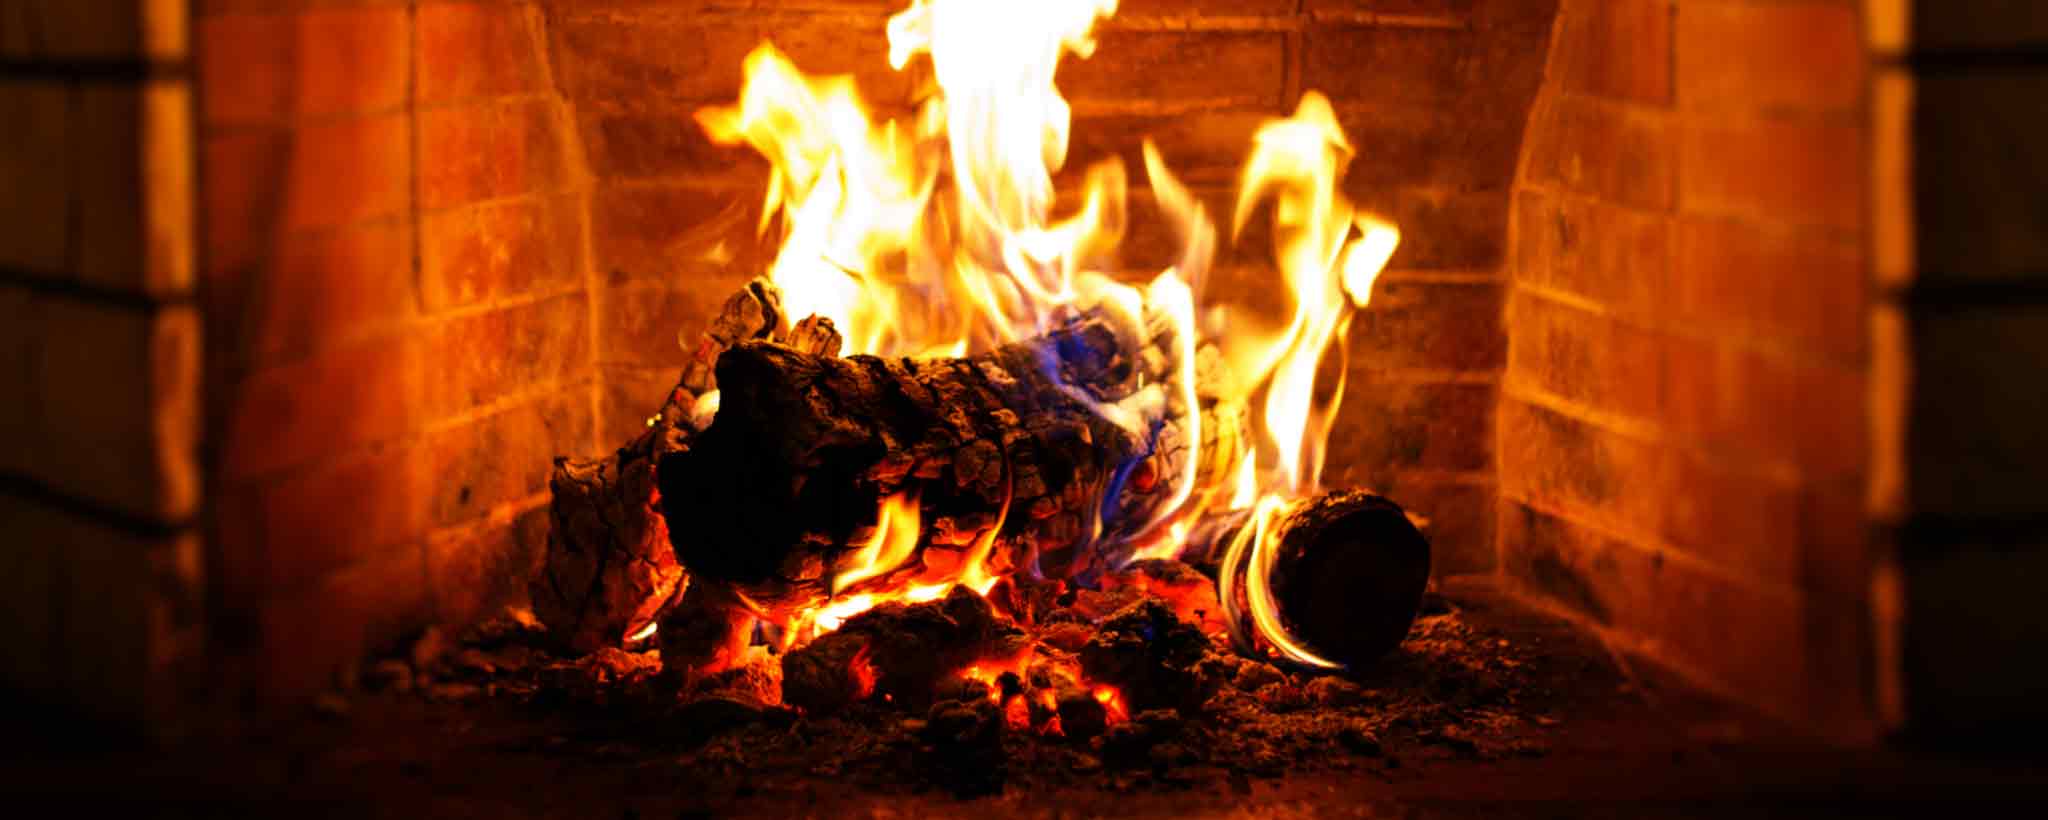 'Burning fireplace'